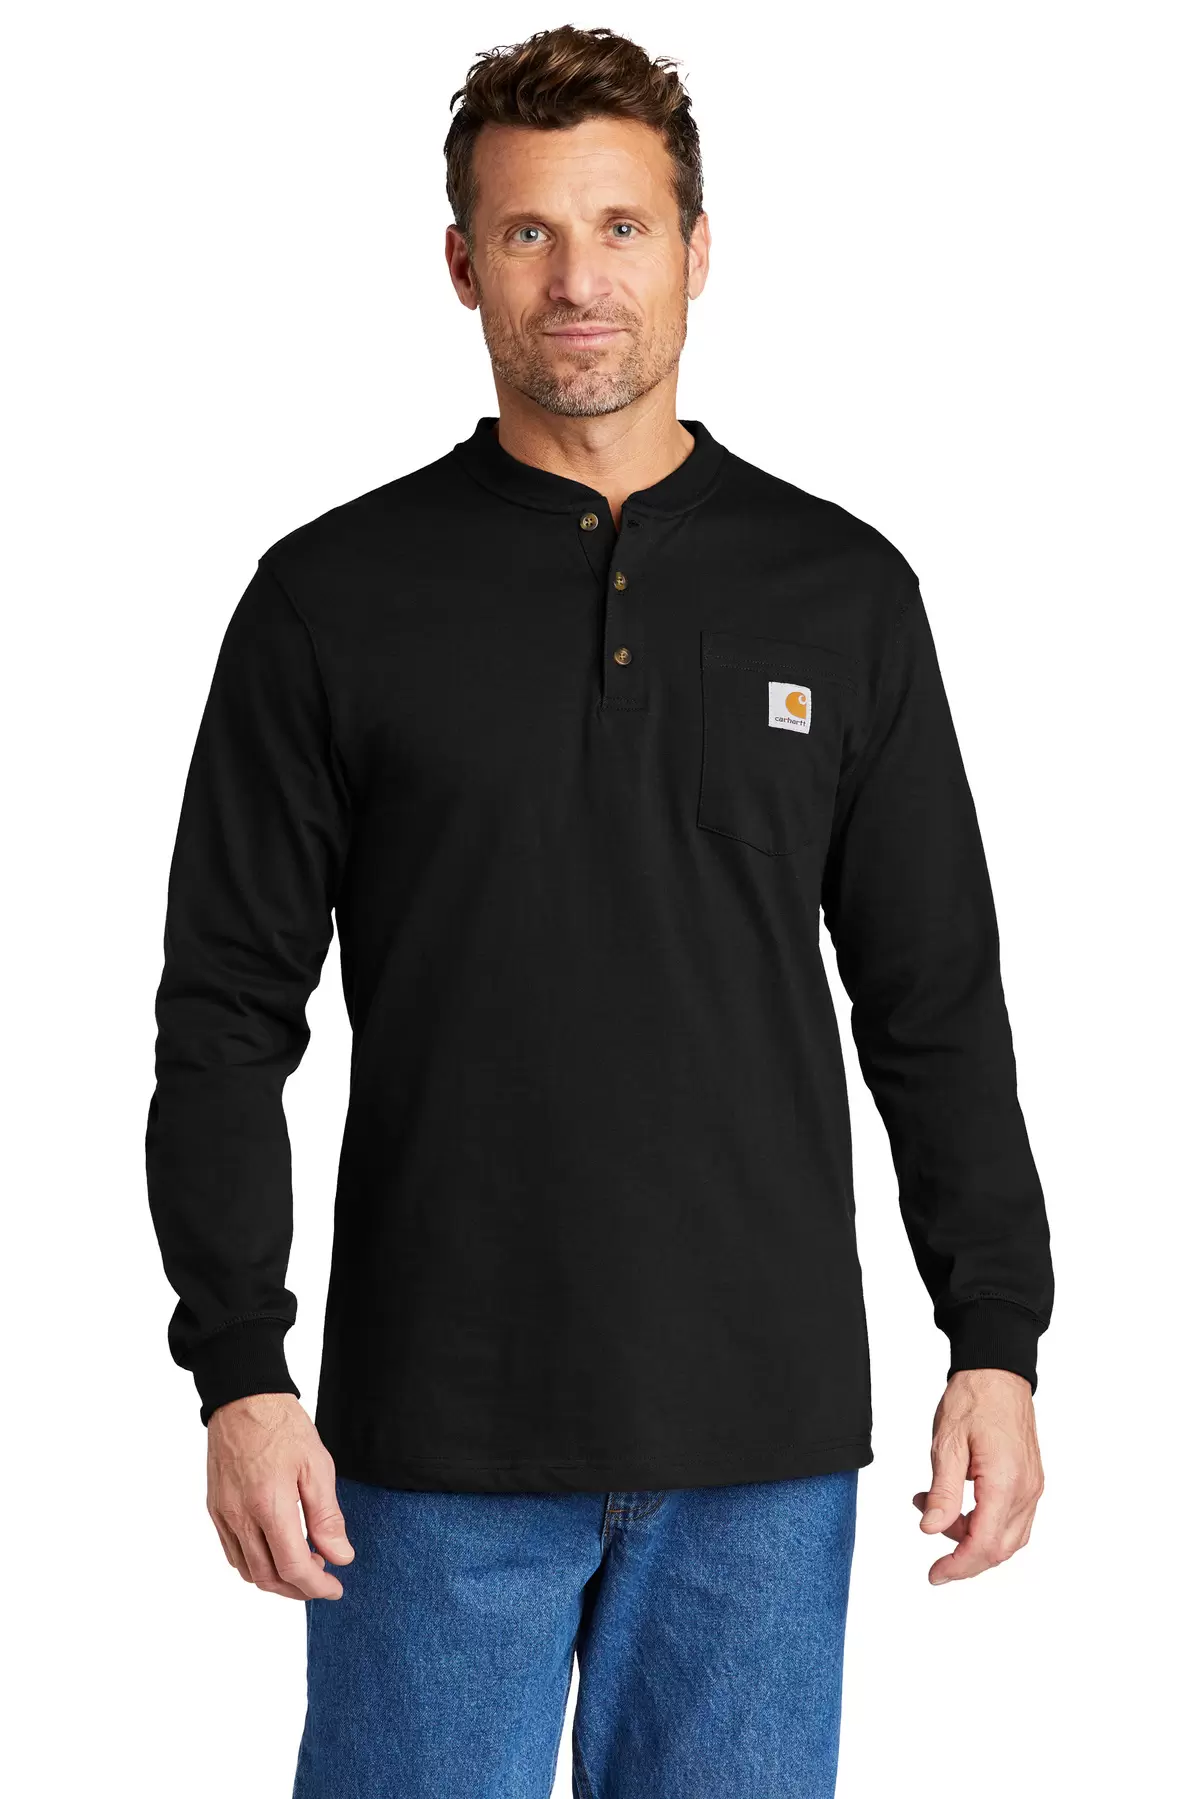 CARHARTT K128 Carhartt Long Sleeve Henley T-Shirt